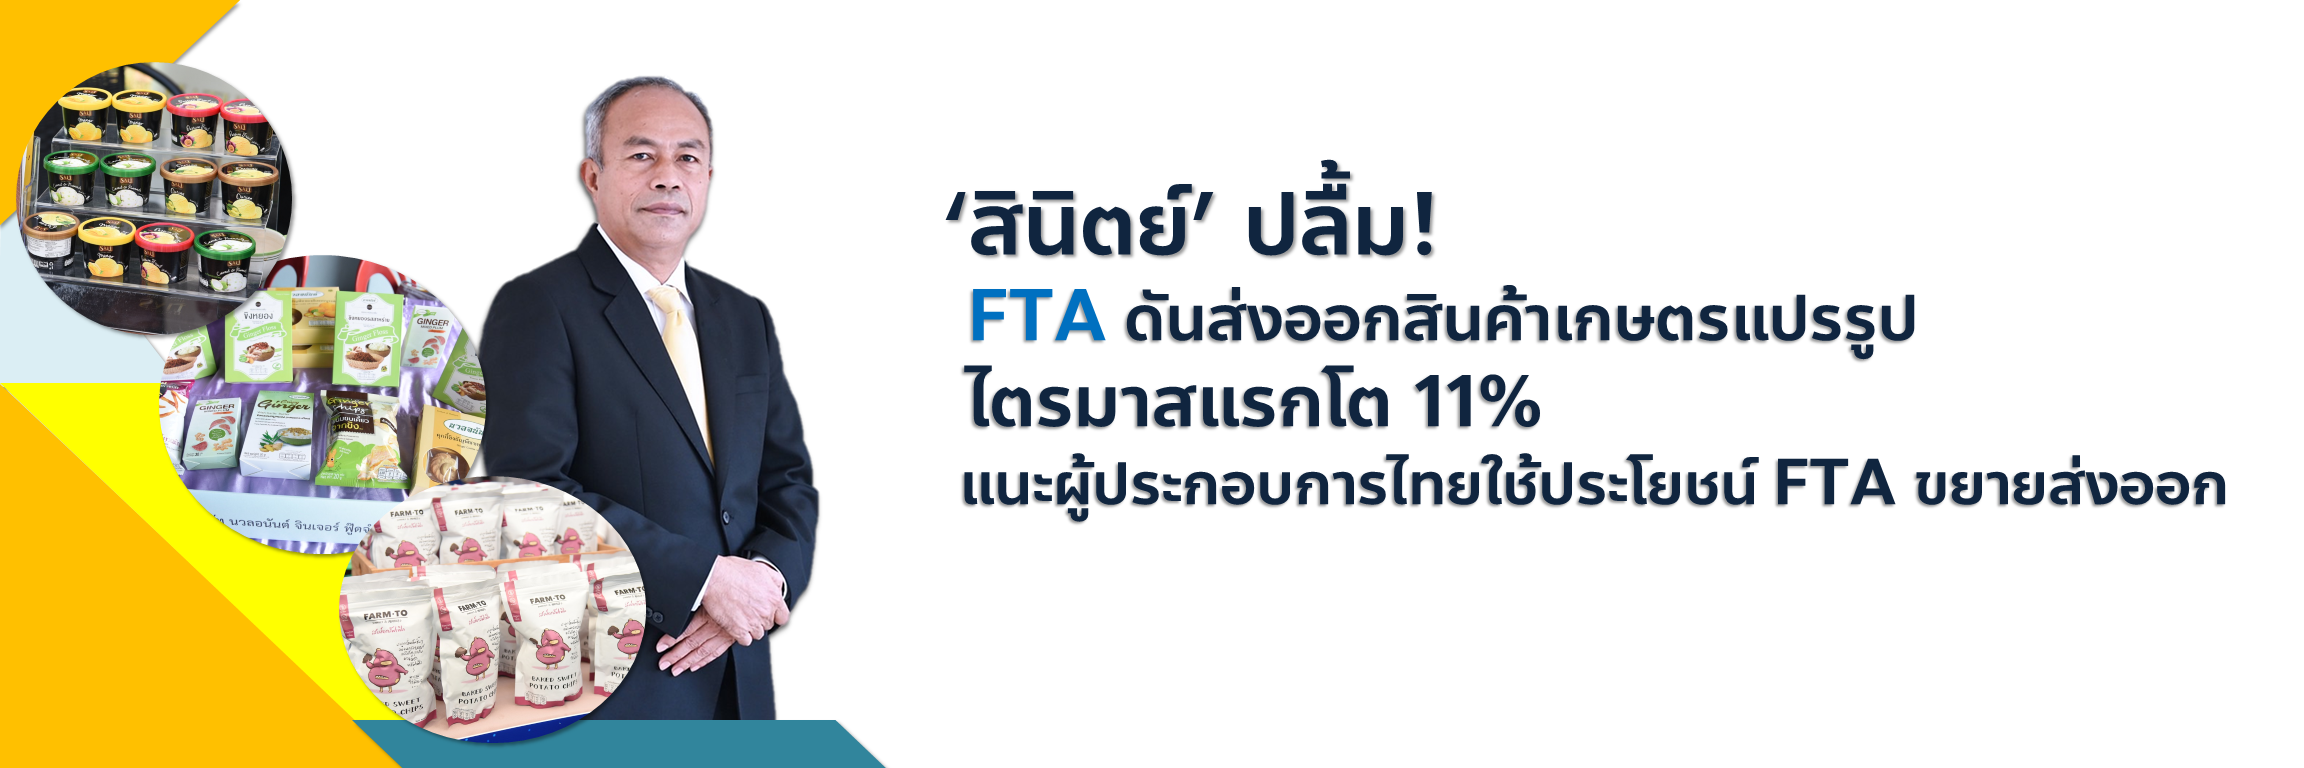 ‘สินิตย์’ ปลื้ม! FTA ดันส่งออกสินค้าเกษตรแปรรูป ไตรมาสแรกโต 11% แนะผู้ประกอบการไทยใช้ประโยชน์ FTA ขยายส่งออก